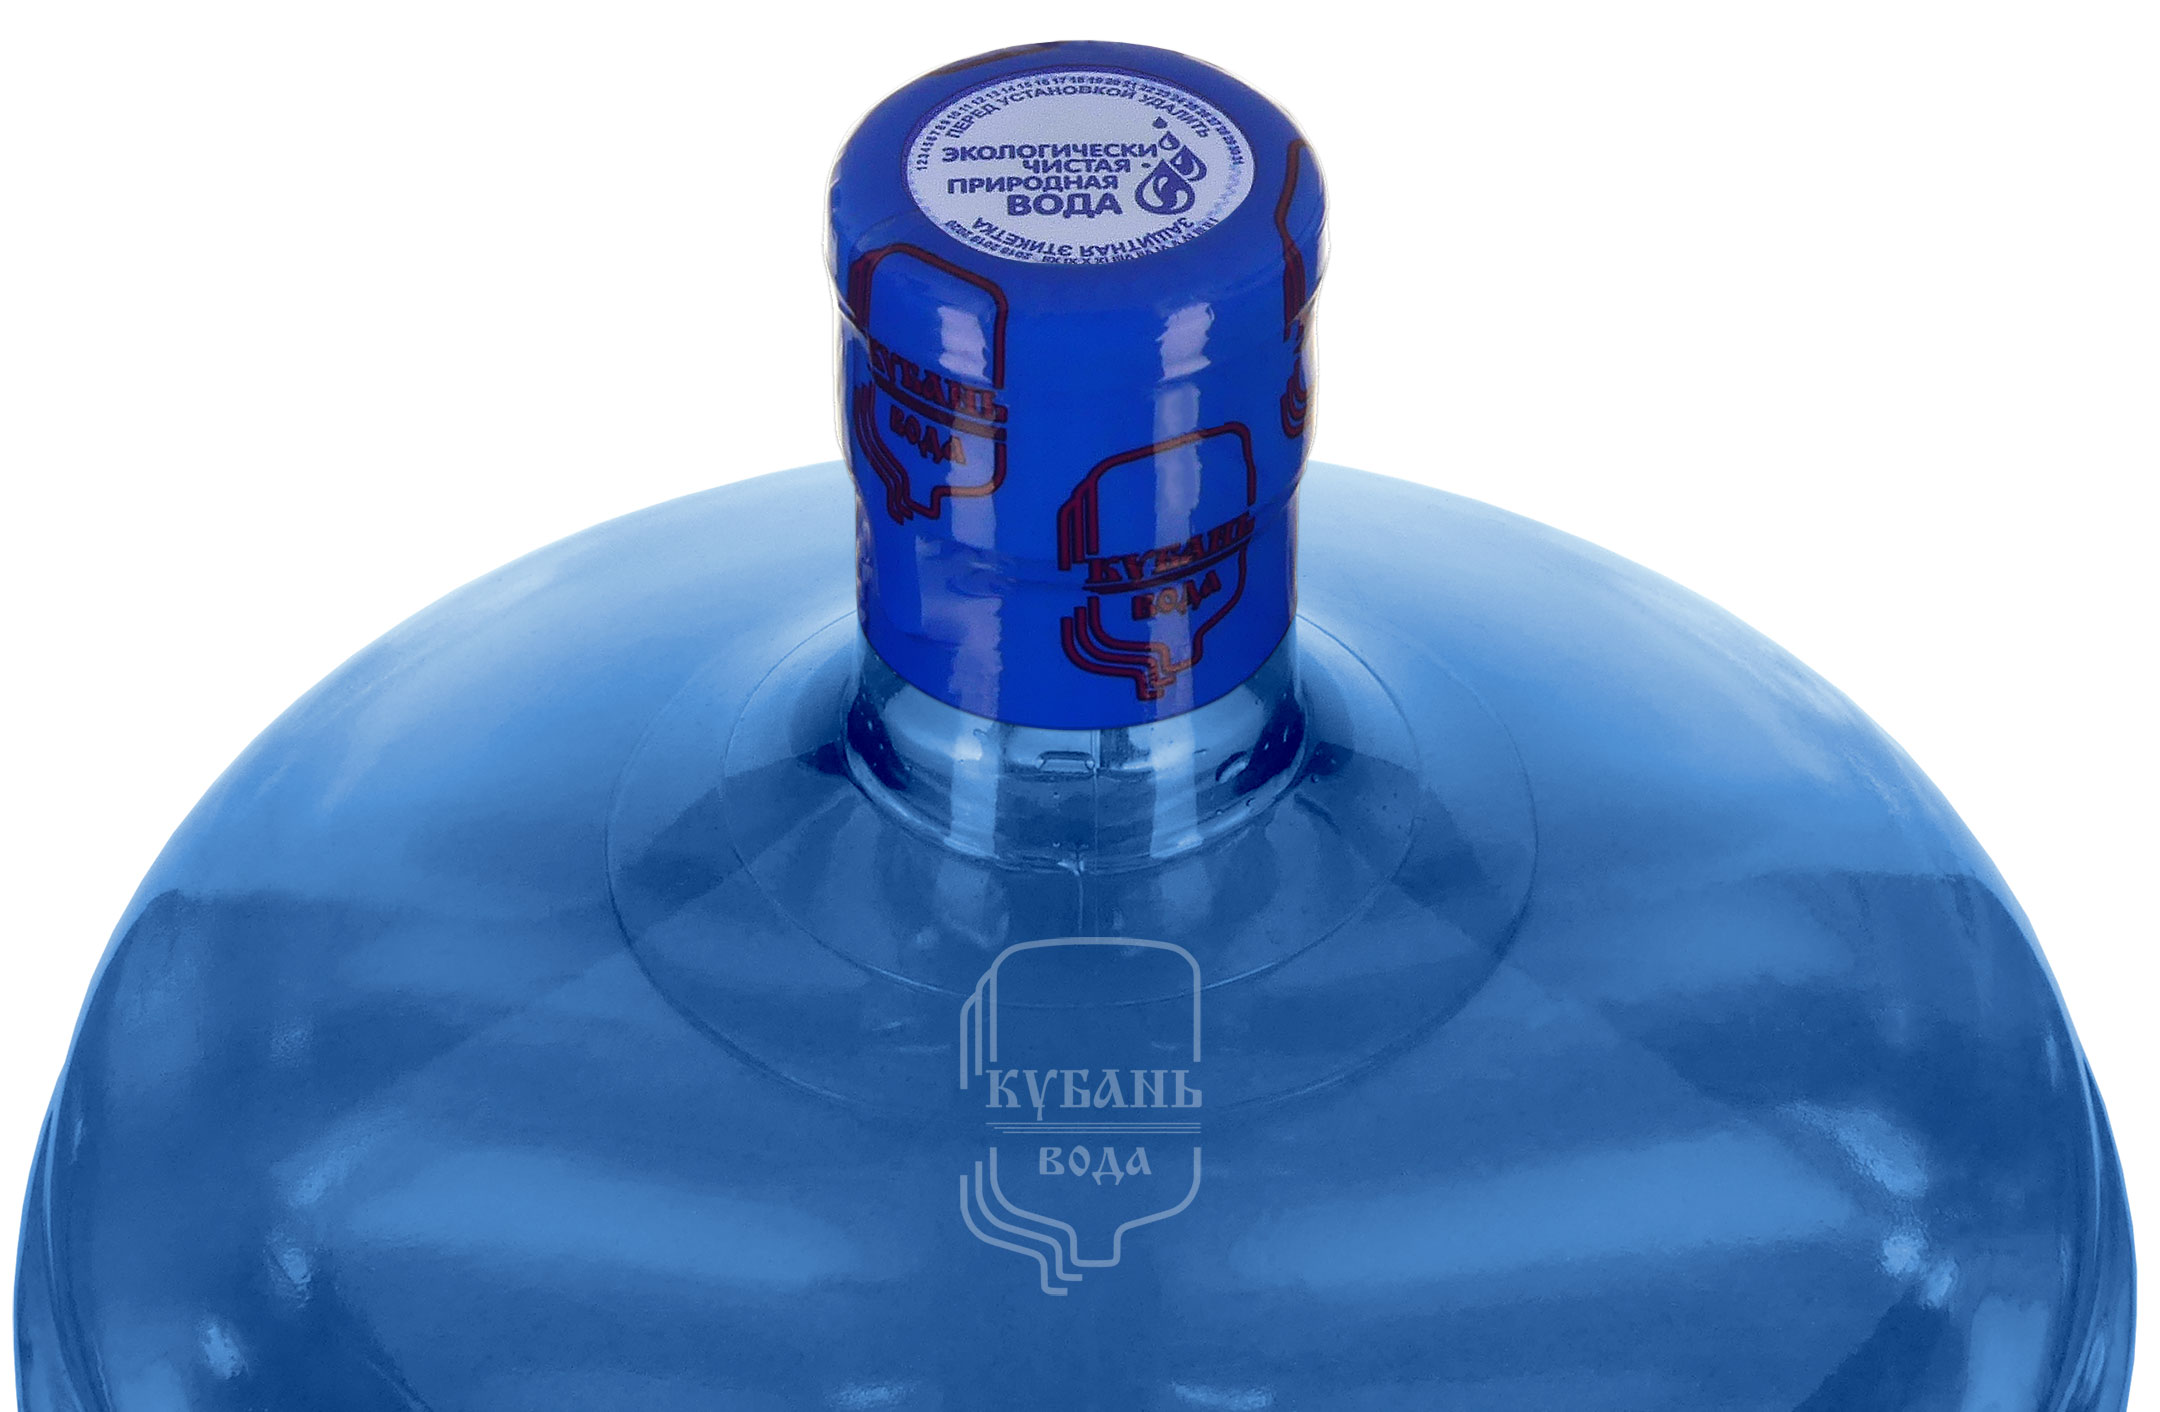 Вода защищена фирменным термоусадочным колпачком с логотипом КубаньВода